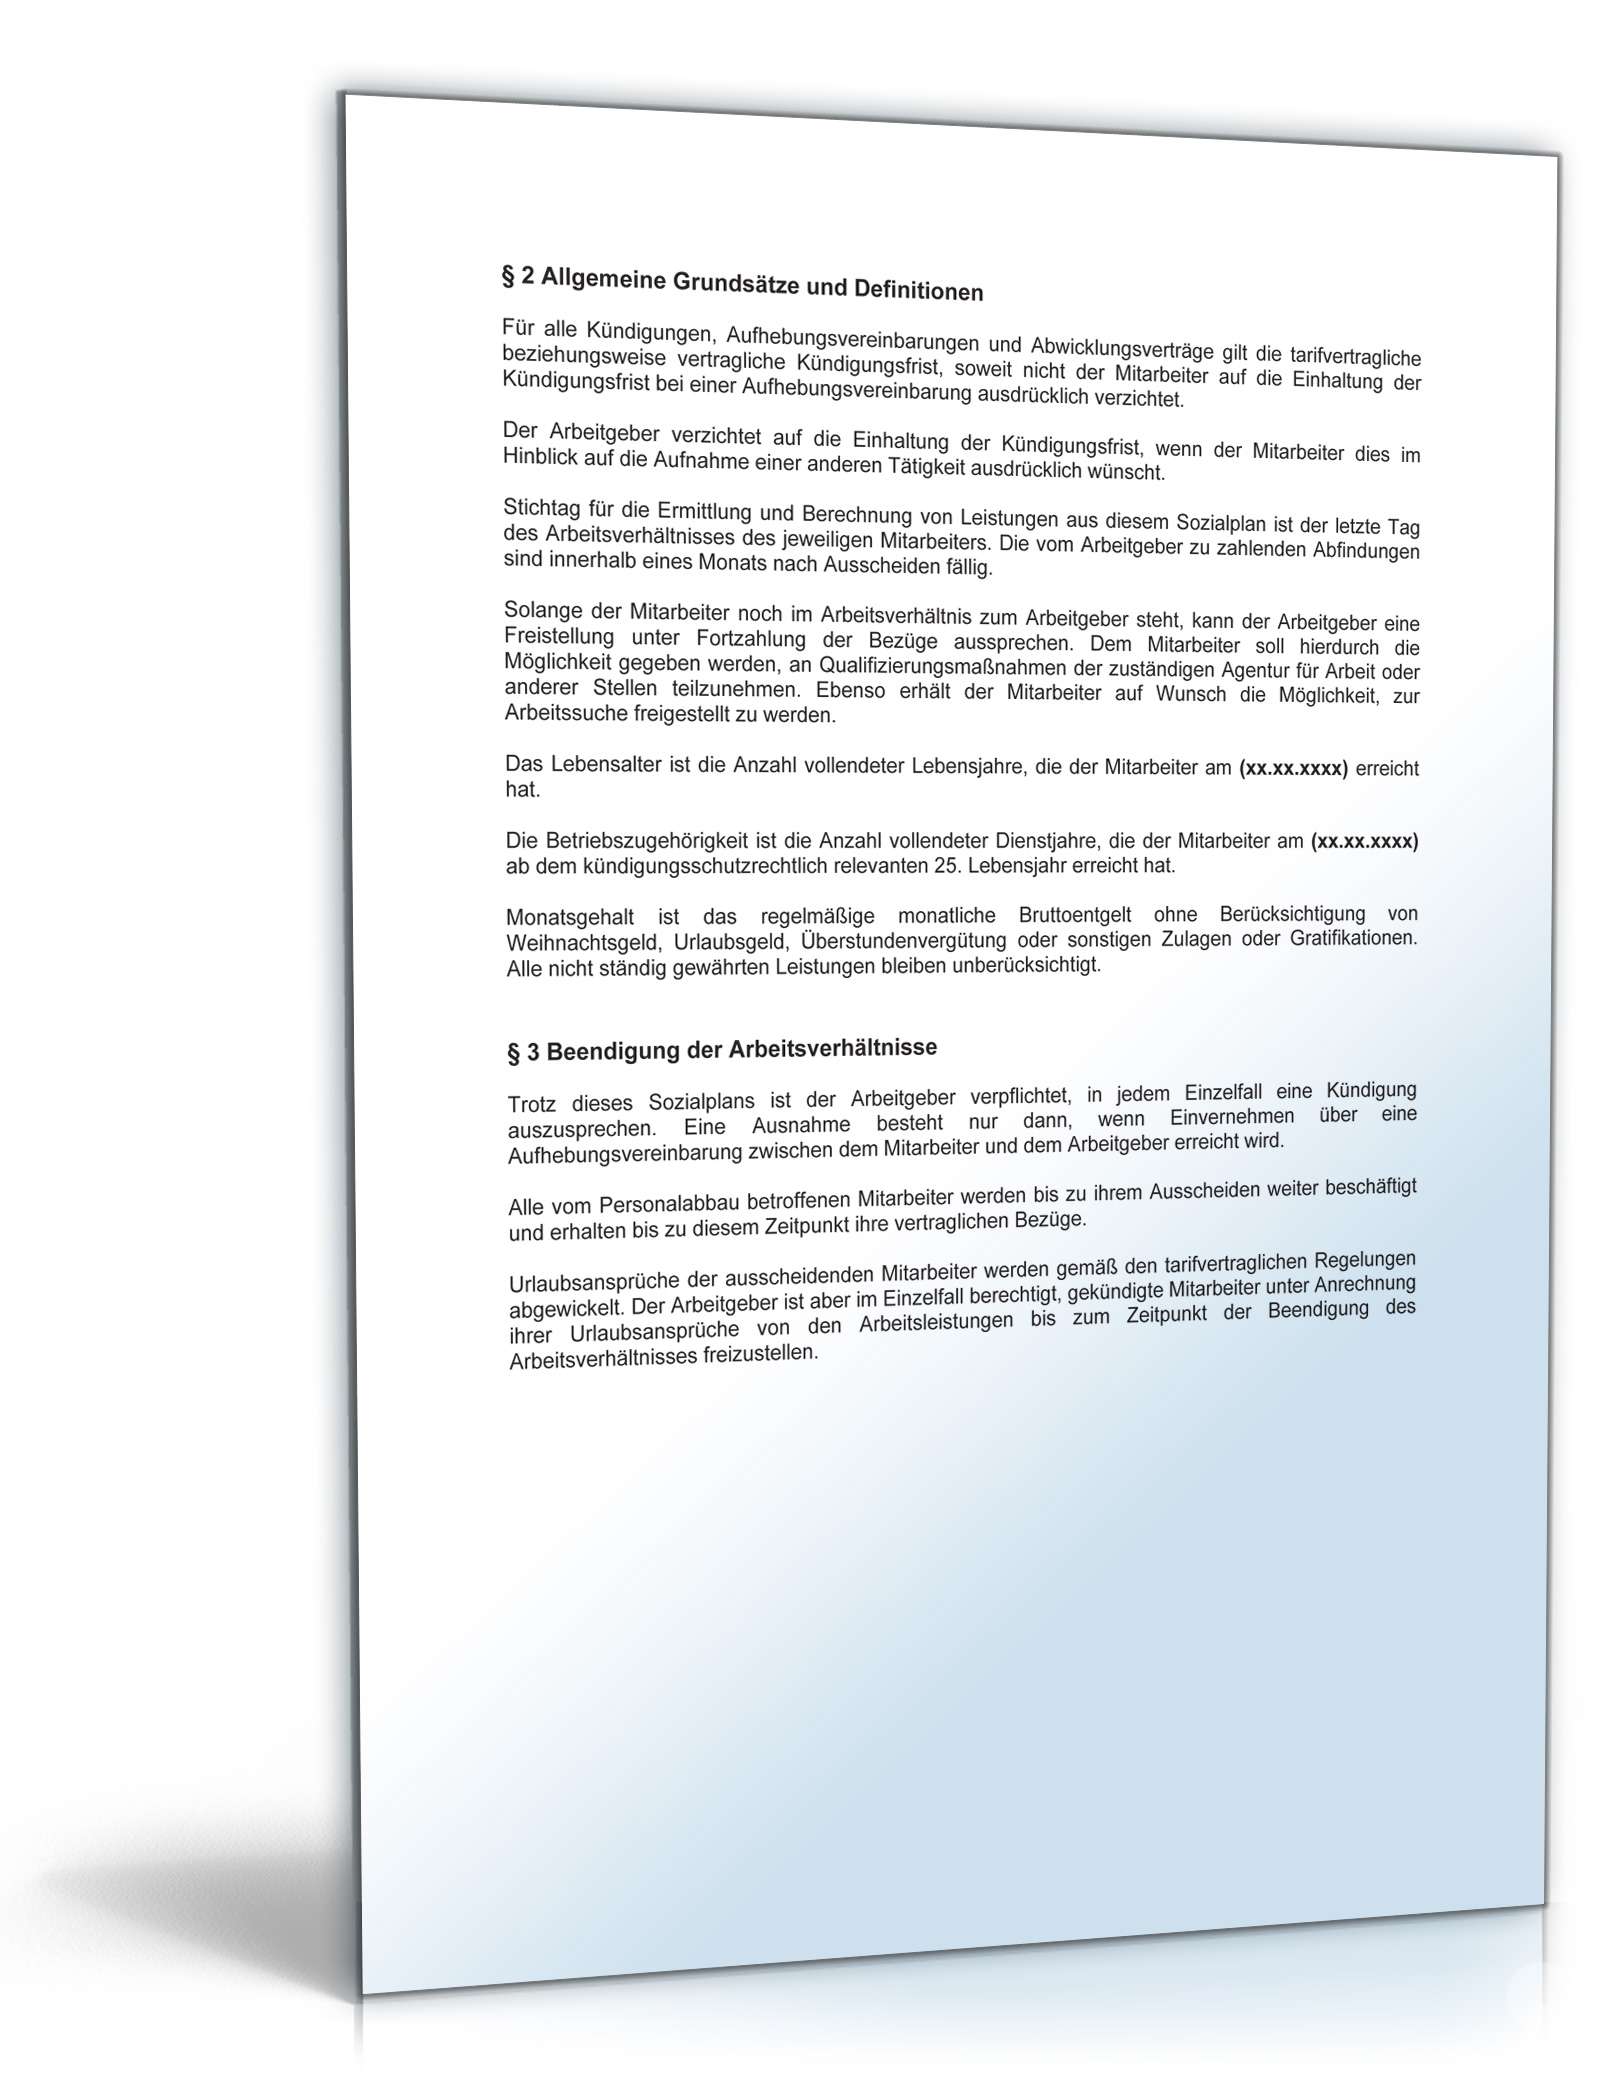 Hauptbild des Produkts: Betriebsvereinbarung über den Sozialplan wegen Personalabbau